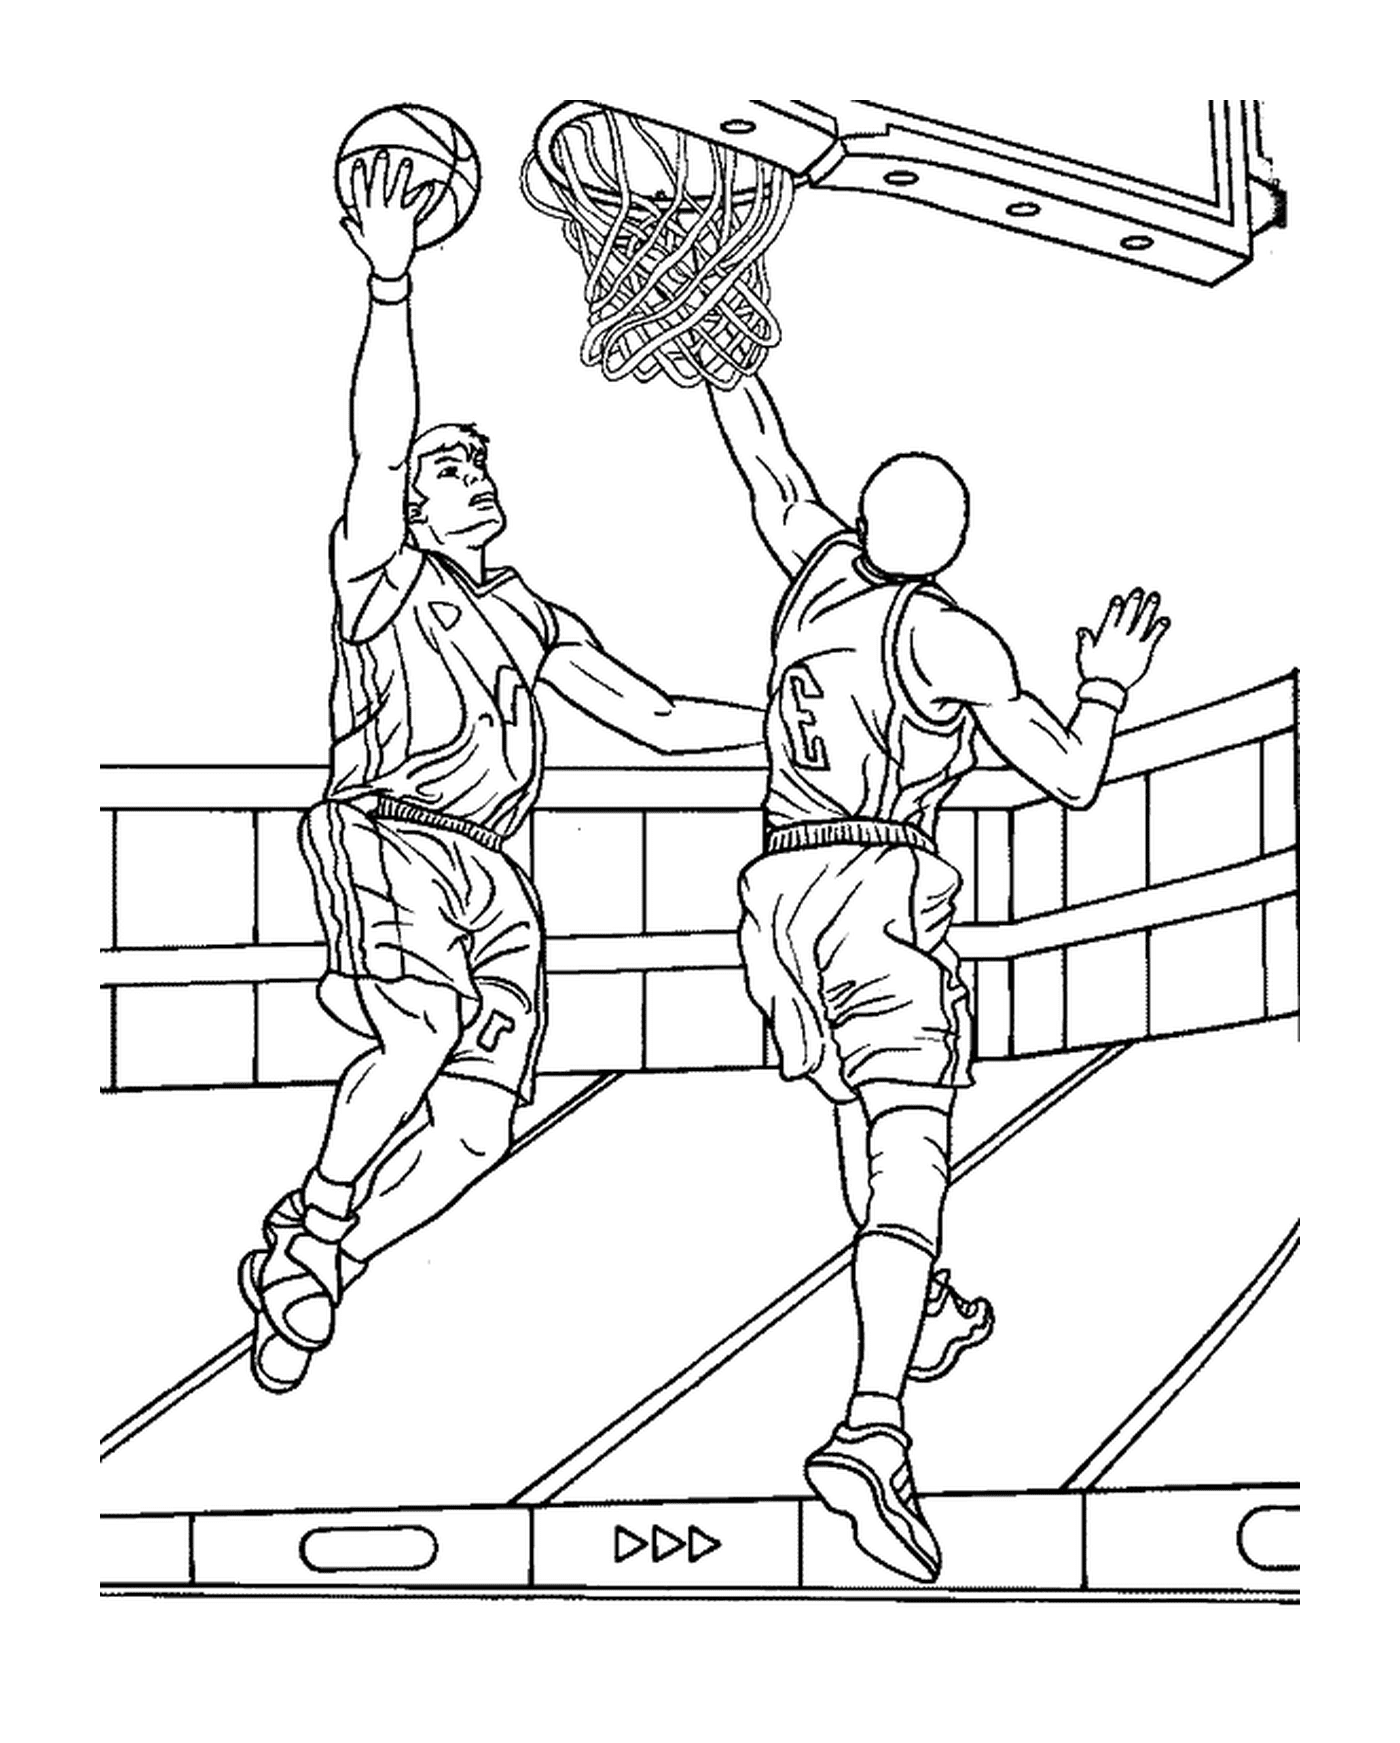  O jogador de basquete vai marcar uma cesta apesar do defensor 